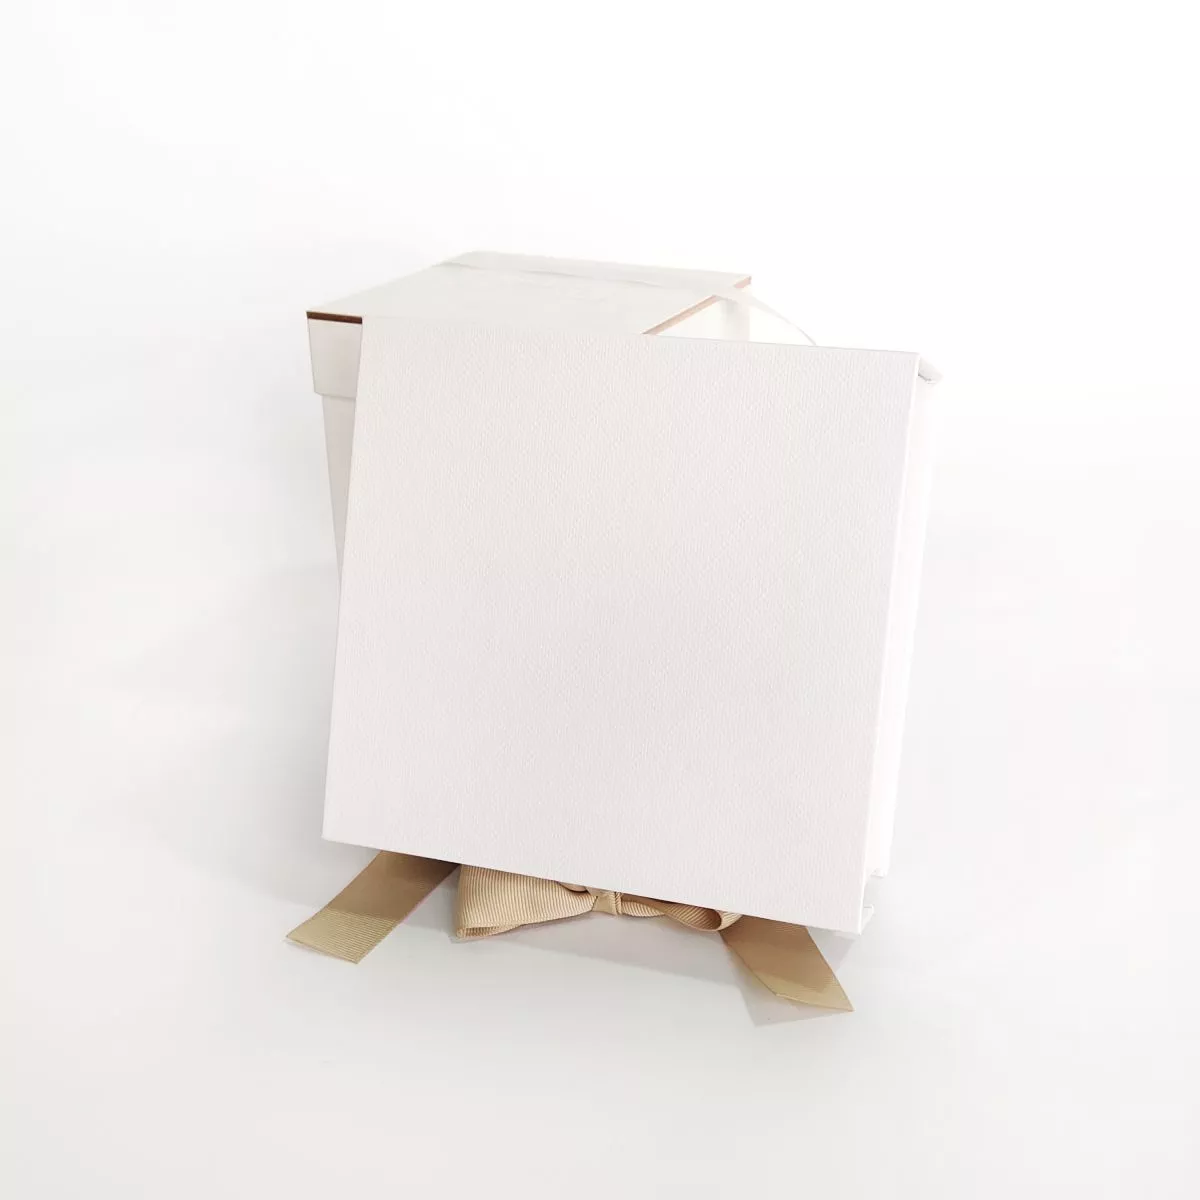  PB043 White Gift Box with Ribbon and Keepsake Box